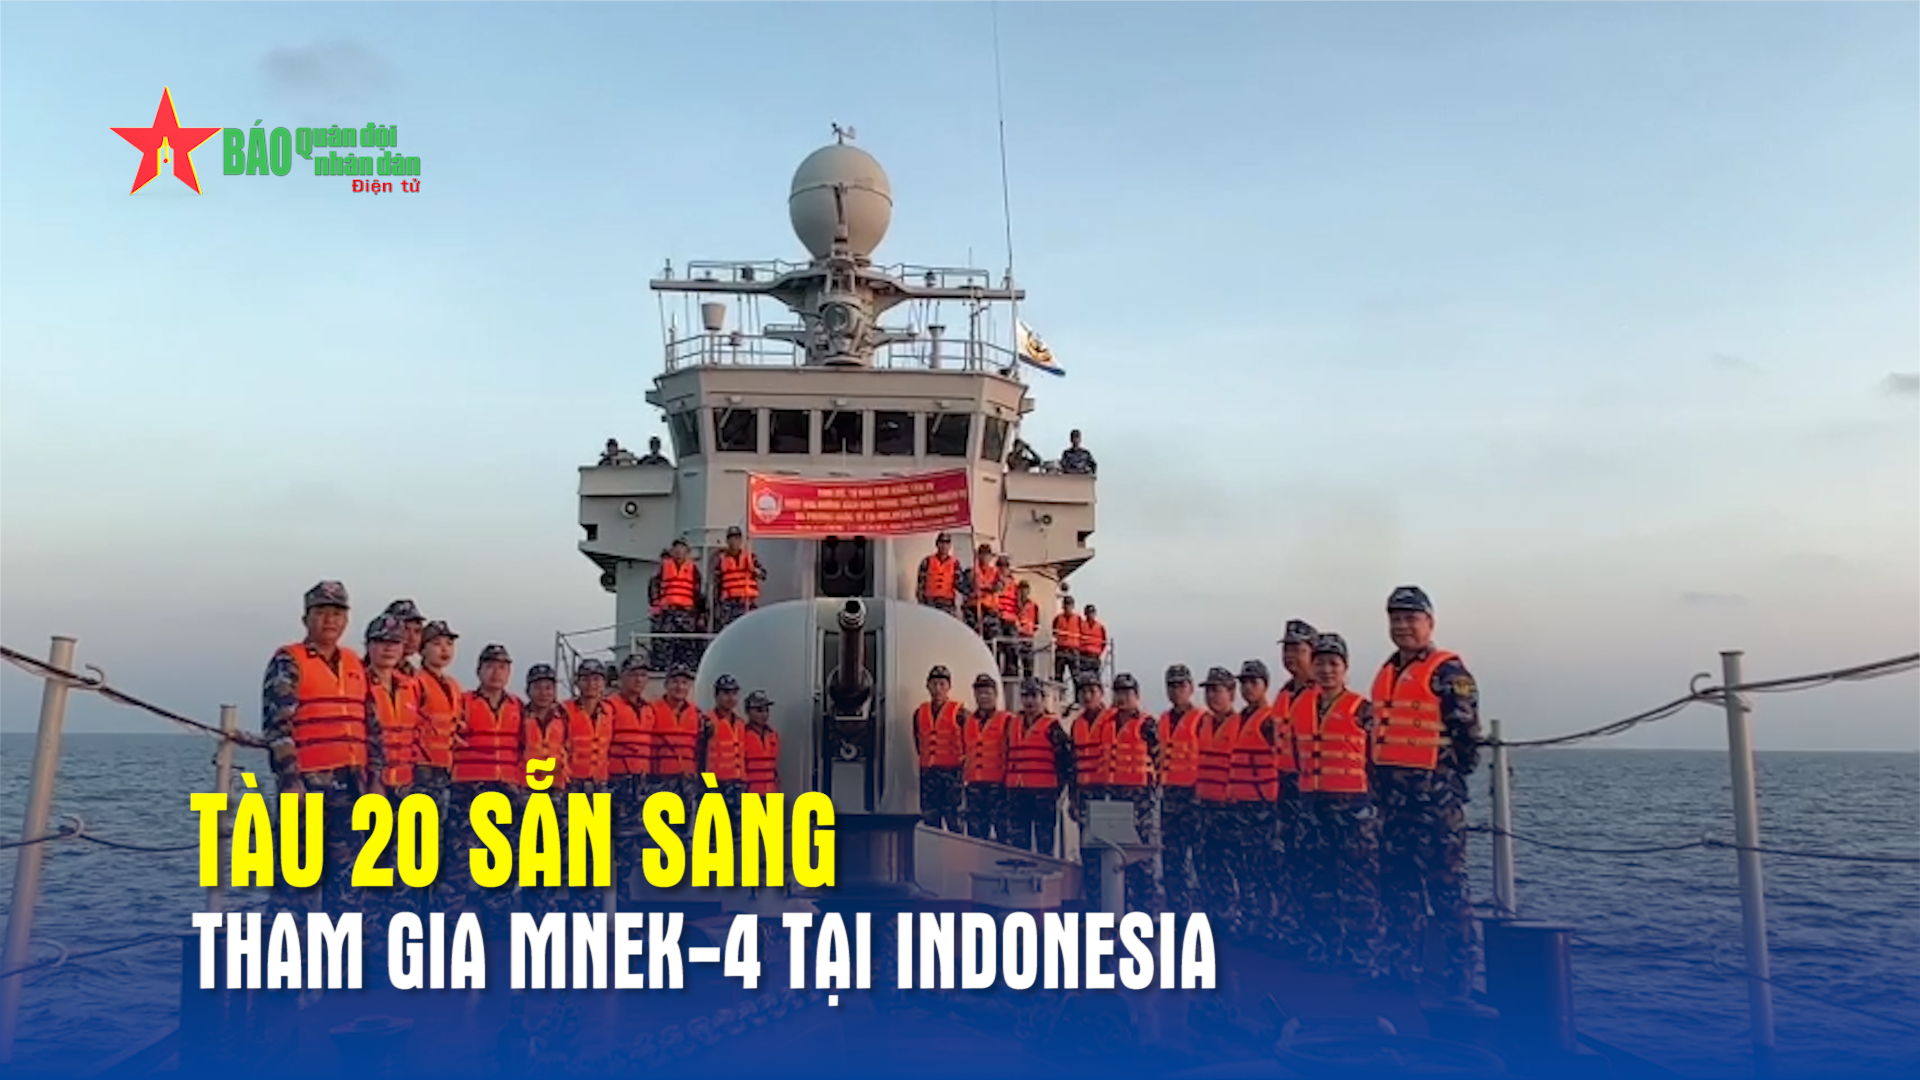 Tàu 20 sẵn sàng tham gia MNEK-4 tại Indonesia